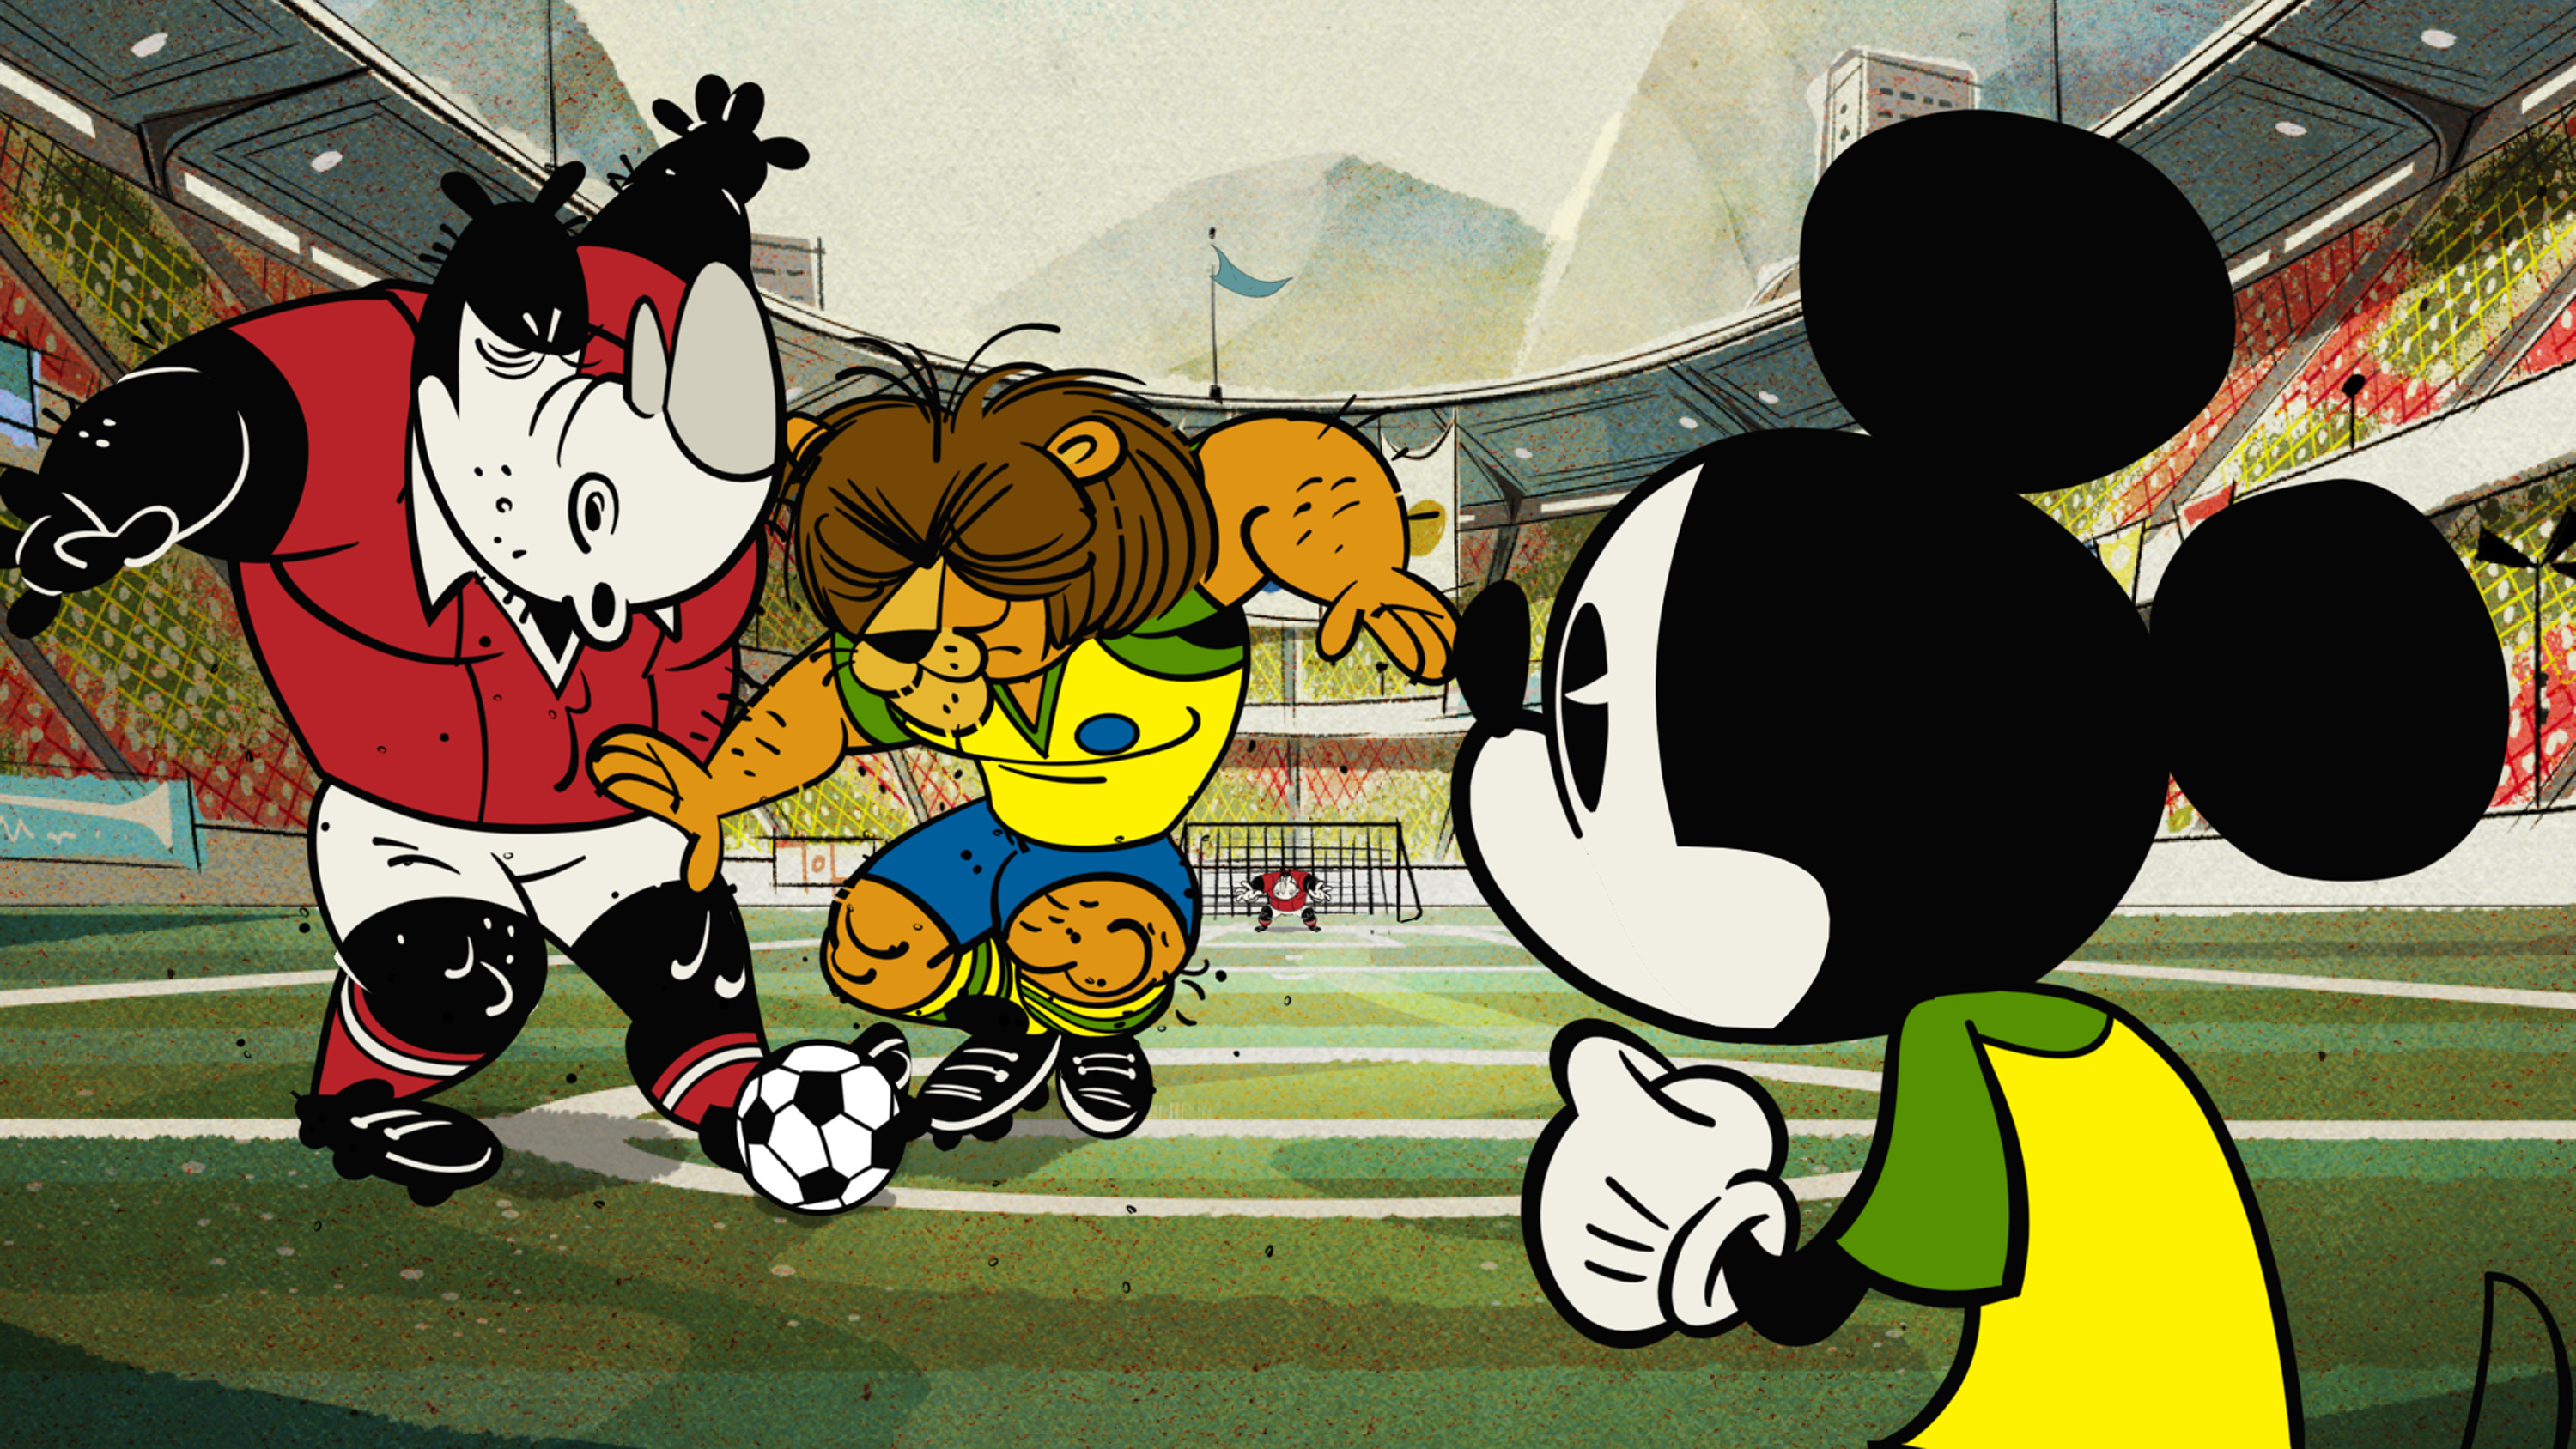 Va invit sa descoperiti episodul special “Mickey Mouse in meciul de fotbal” din seria de scurtmetraje “Desene cu Mickey”. 